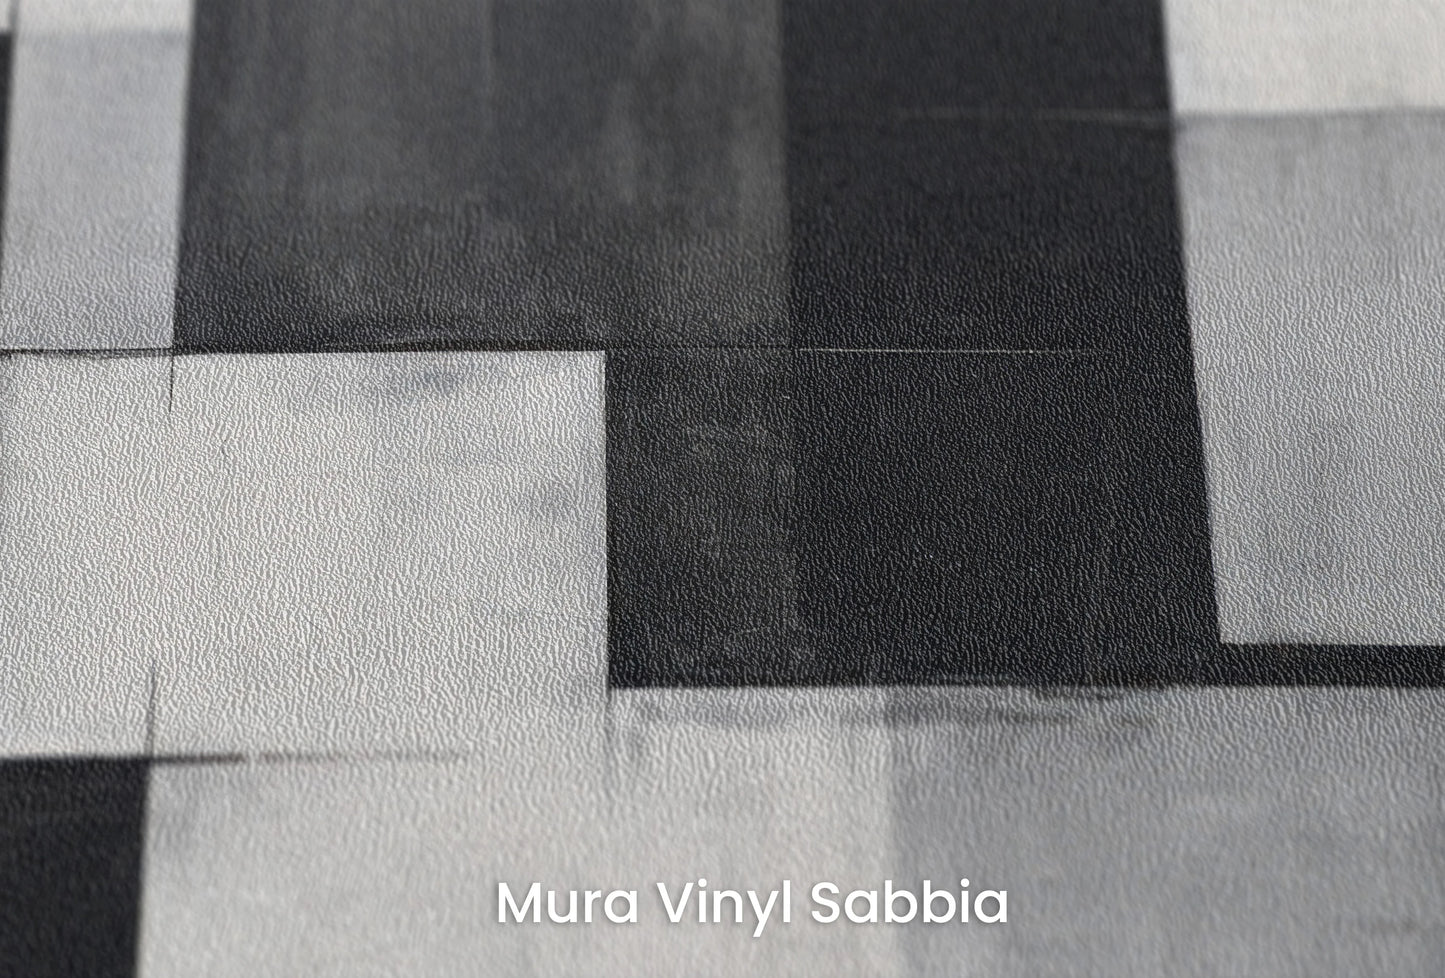 Zbliżenie na artystyczną fototapetę o nazwie Abstract Squares na podłożu Mura Vinyl Sabbia struktura grubego ziarna piasku.